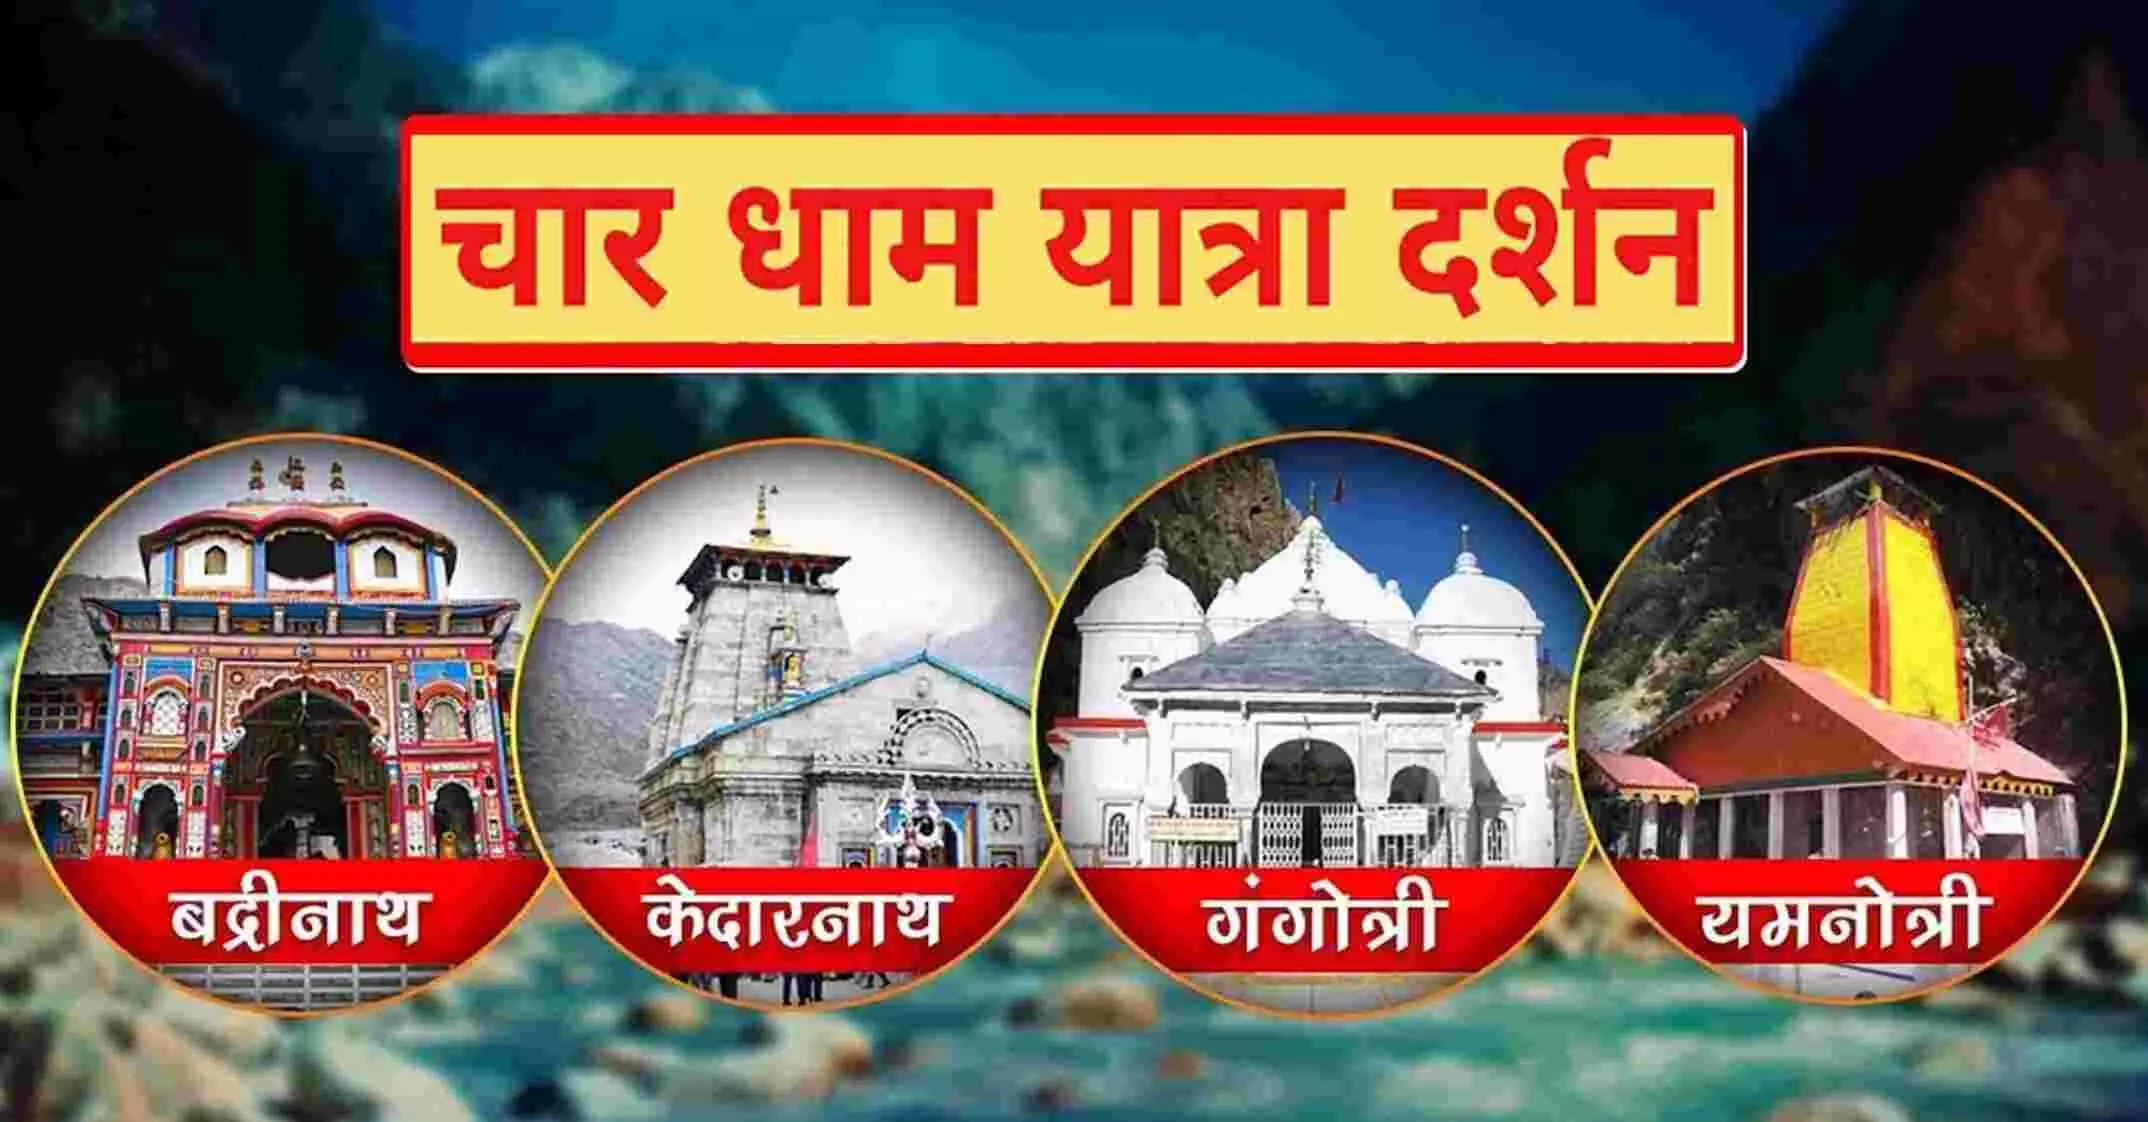 Char Dham Yatra: उत्तराखंड में चारधाम यात्रा शुरू, कुछ देर में खुलेंगे गंगोत्री-यमनोत्री के पट, CM पुष्कर सिंह धामी ने की पूजा-पाठ